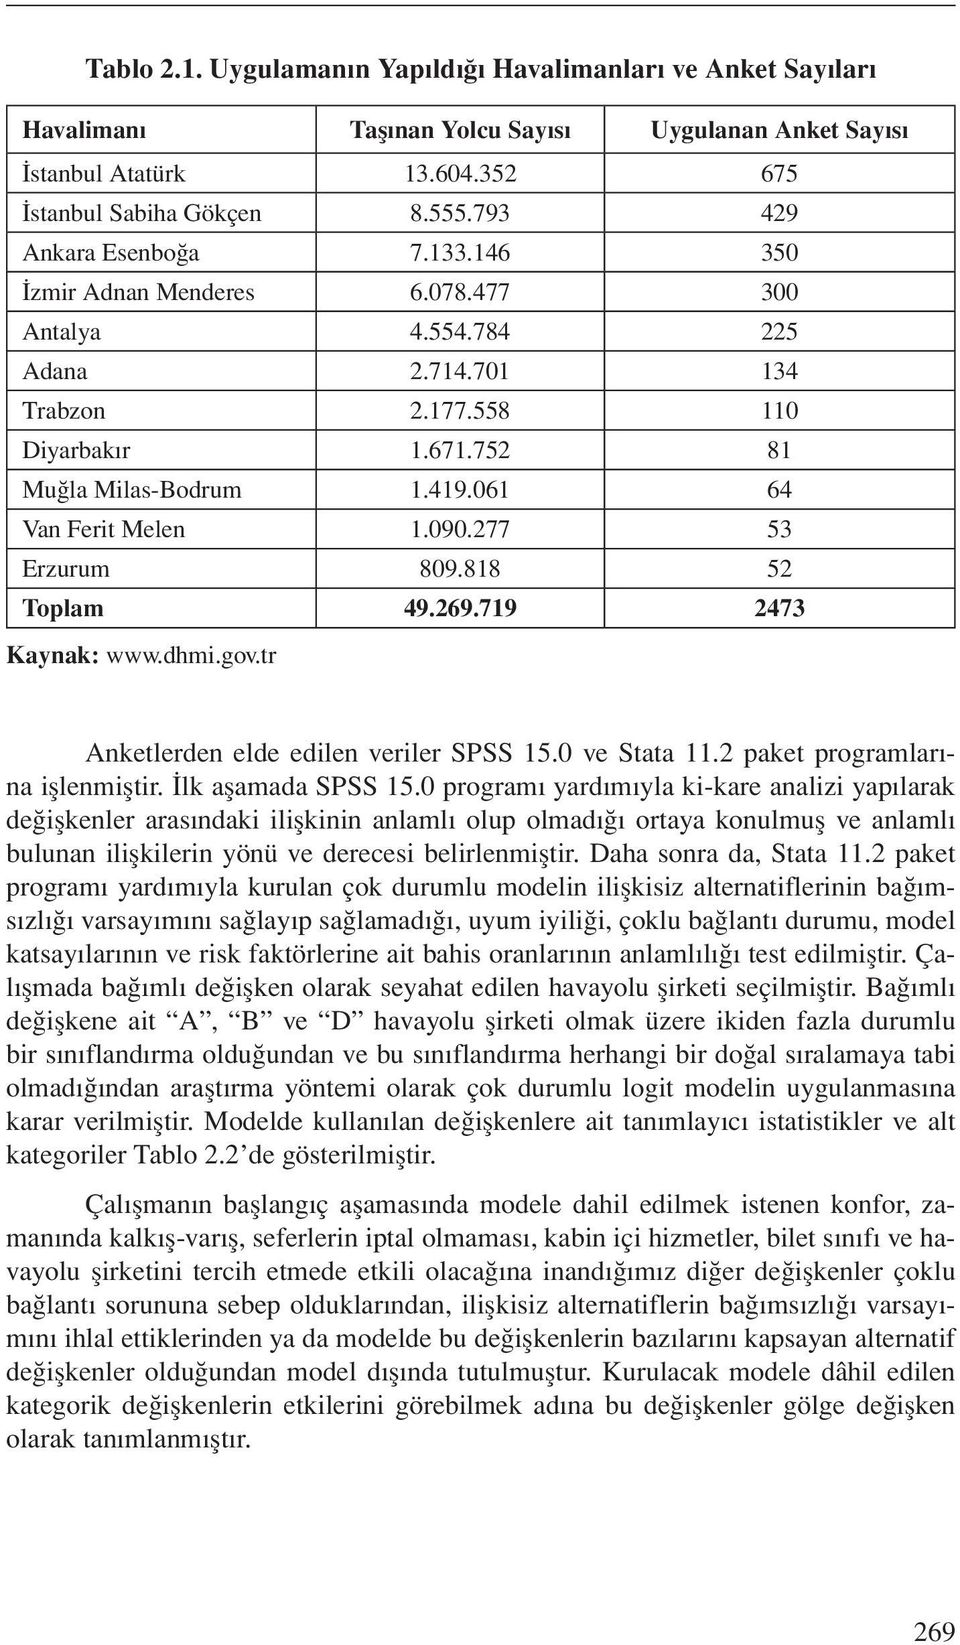 061 64 Van Ferit Melen 1.090.277 53 Erzurum 809.818 52 Toplam 49.269.719 2473 Kaynak: www.dhmi.gov.tr Anketlerden elde edilen veriler SPSS 15.0 ve Stata 11.2 paket programlarına işlenmiştir.